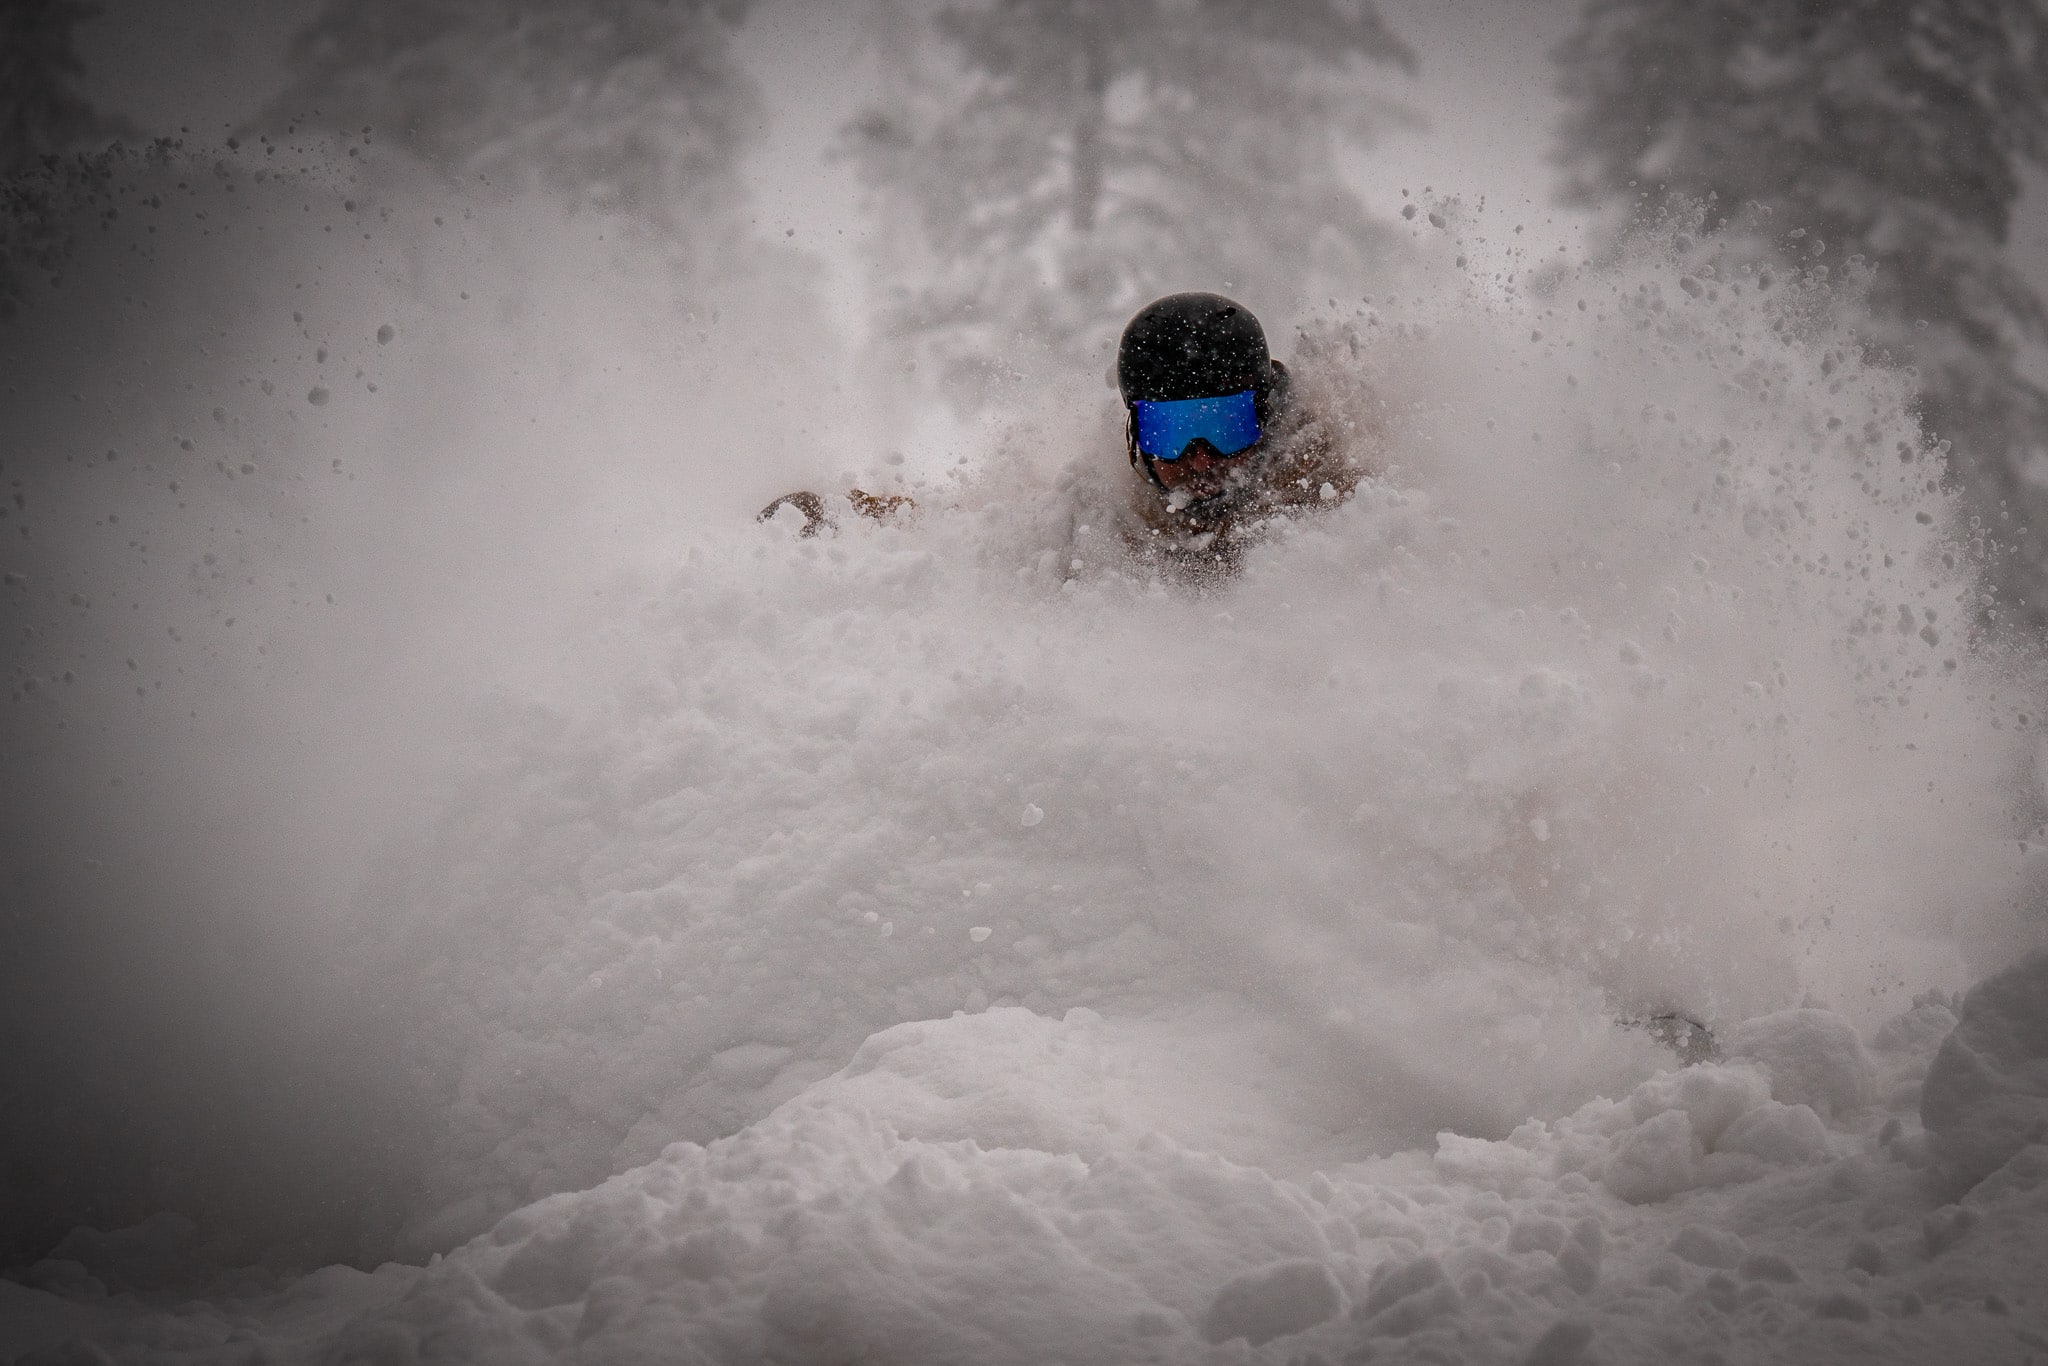 Snowboarder slashing deep powder